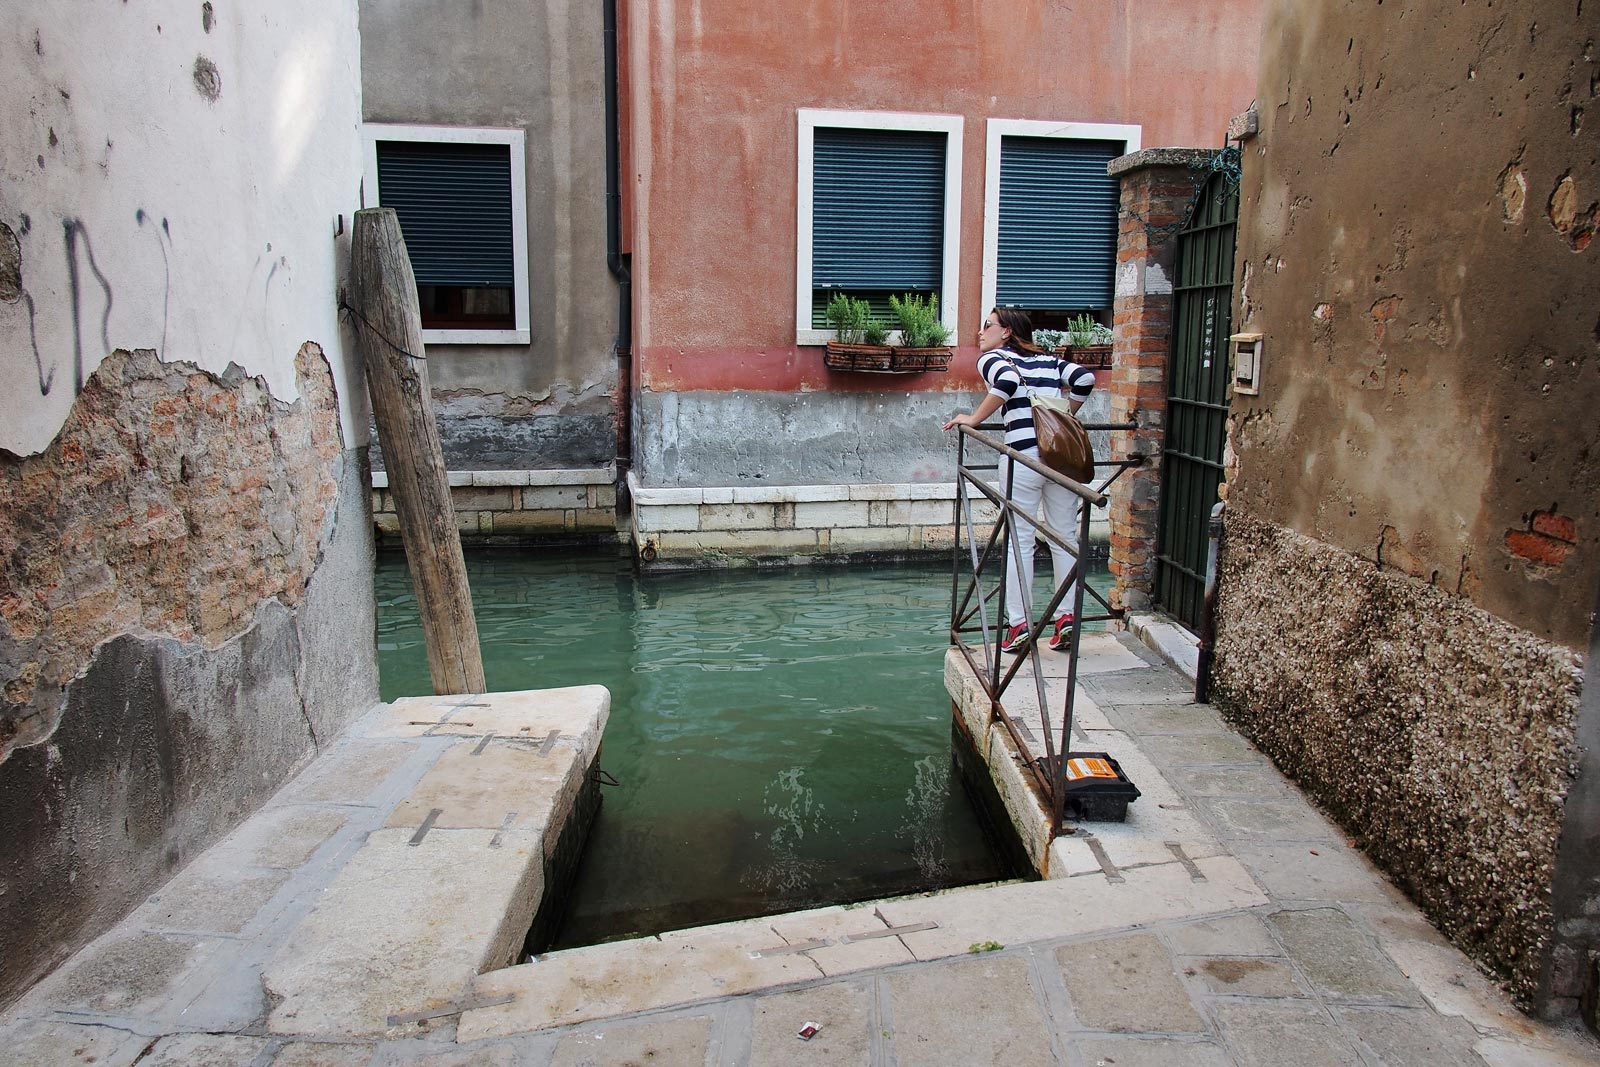 Venice, Italy, 2013